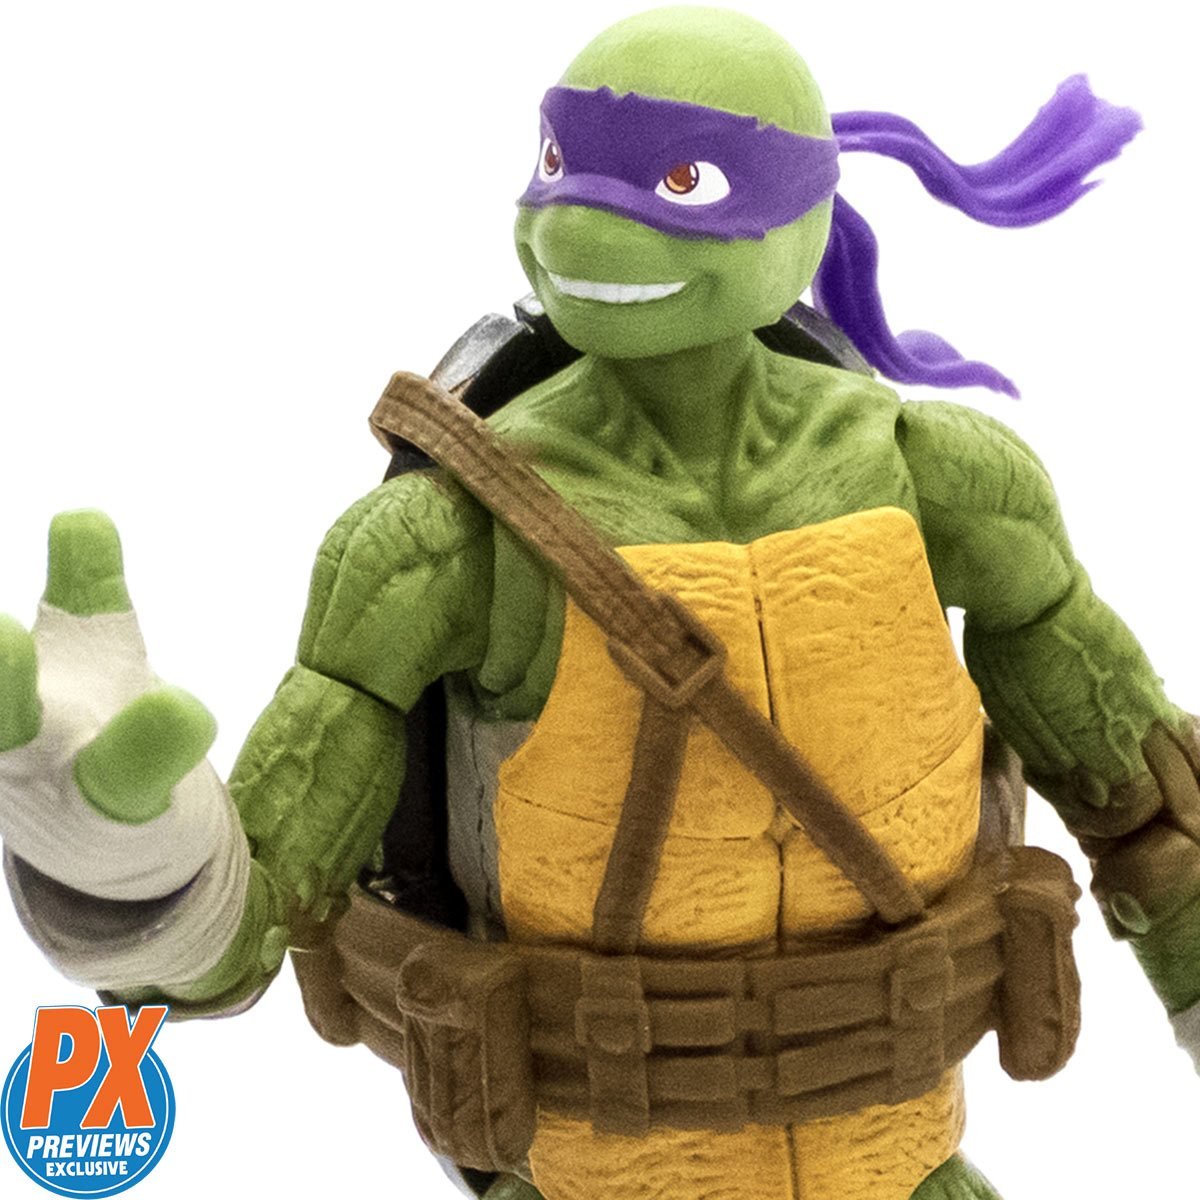 Teenage Mutant Ninja Turtles Donatello vs. Shredder Action Figure